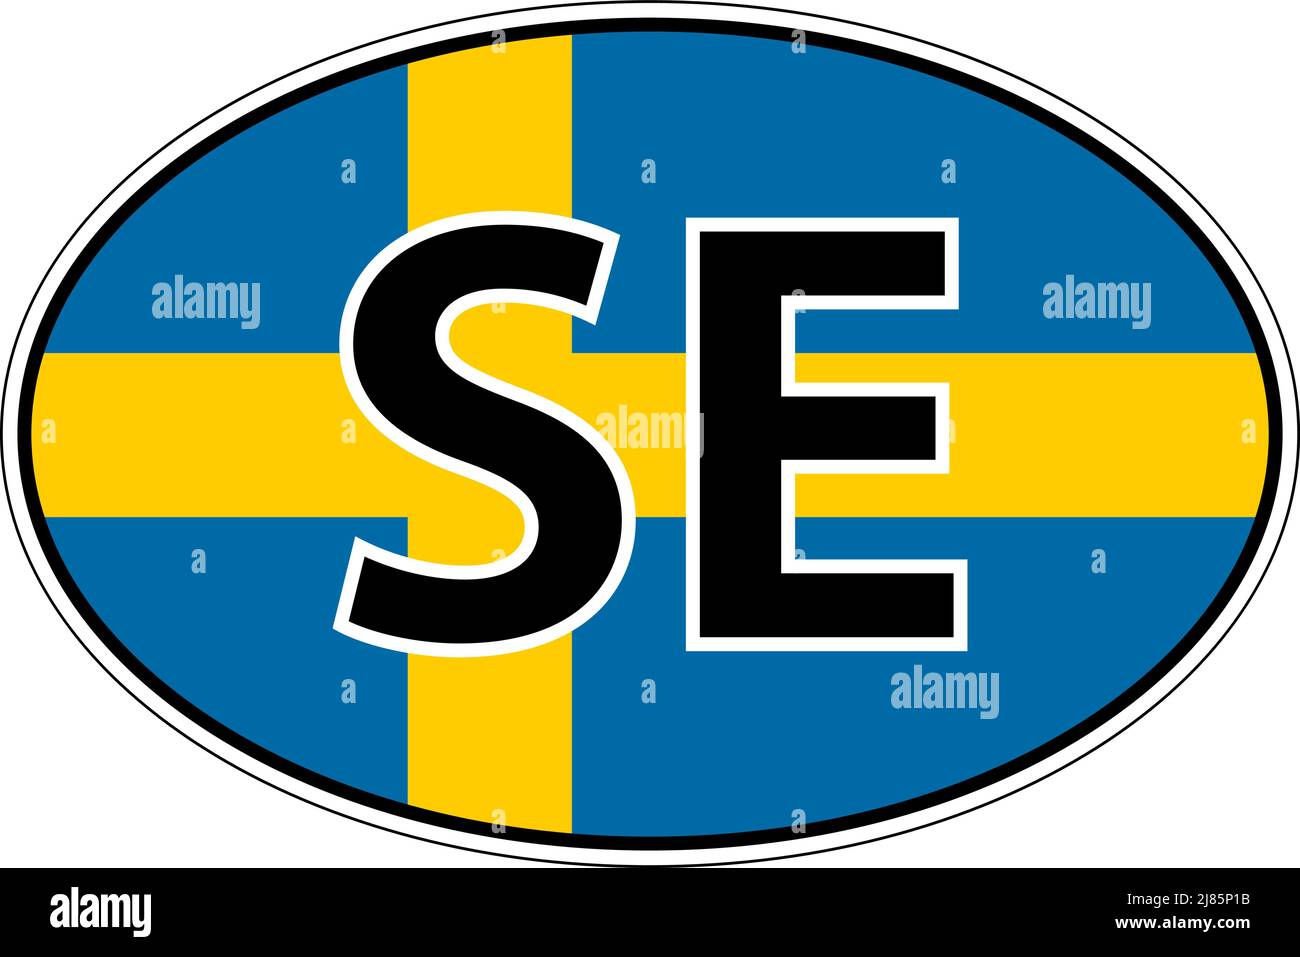 Sweden SE flag label sticker on car, international license plate Stock Vector